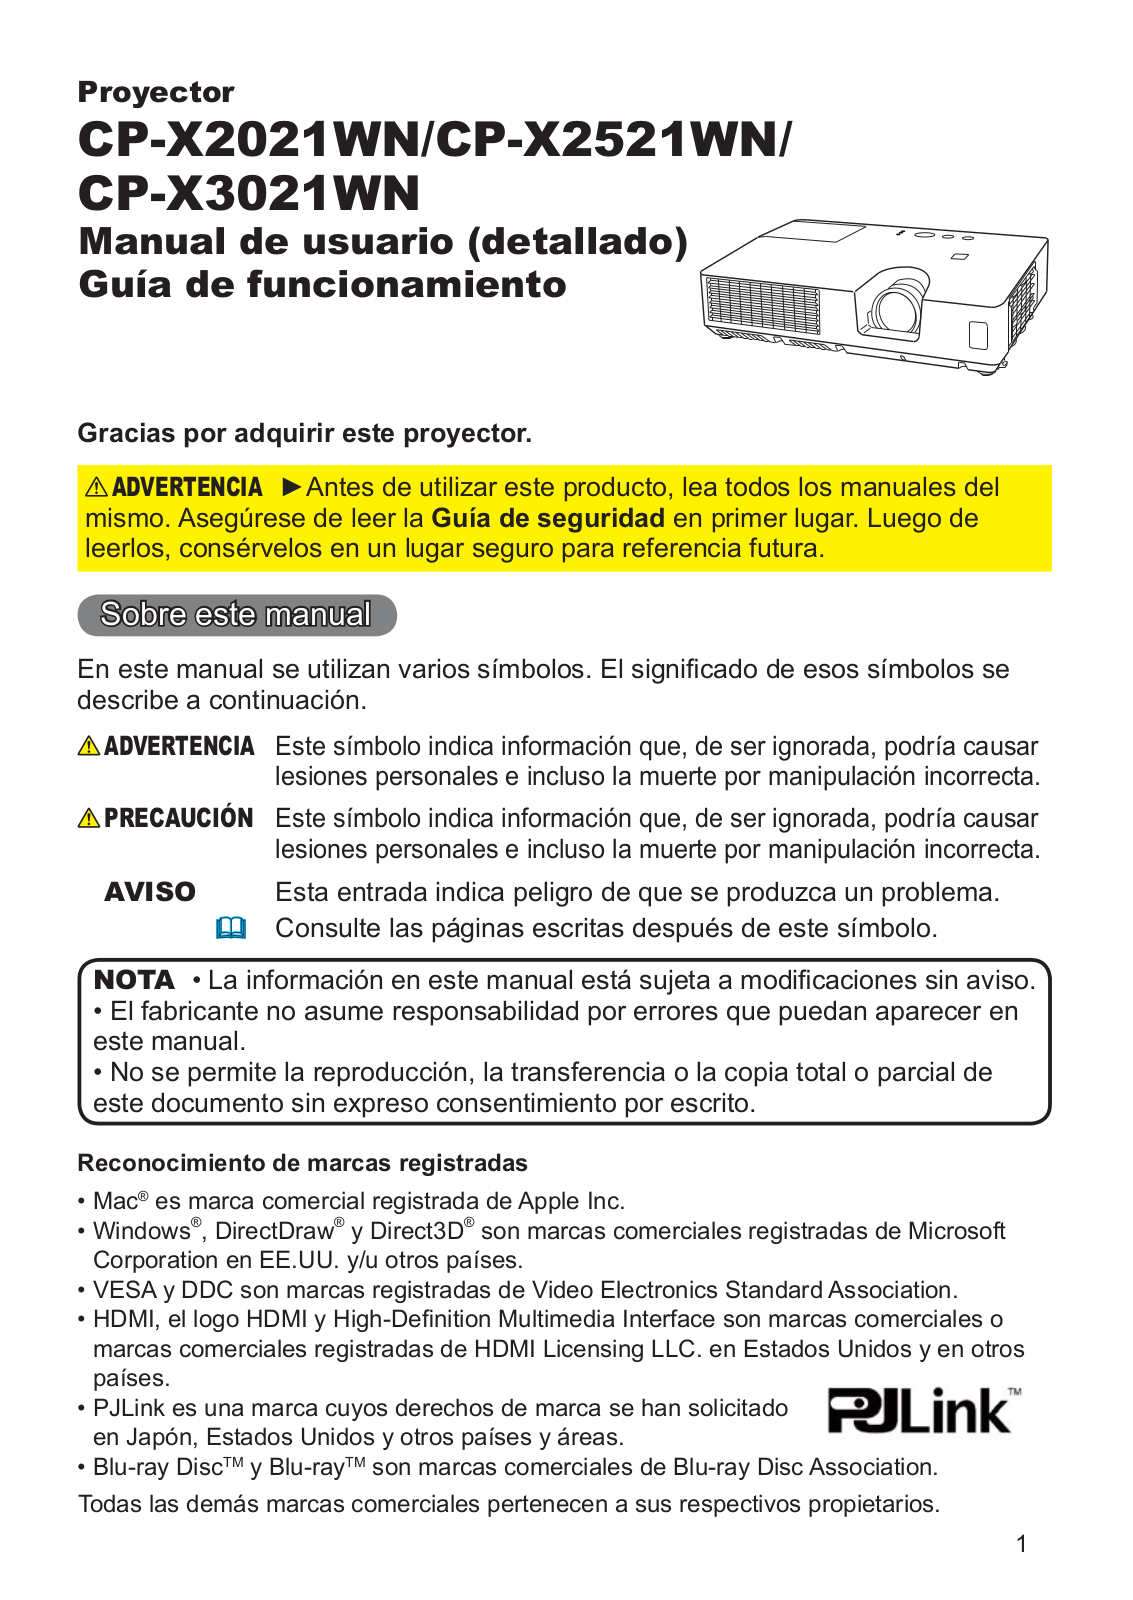 Hitachi CP-X2521WN, CP-X2021WN User Manual